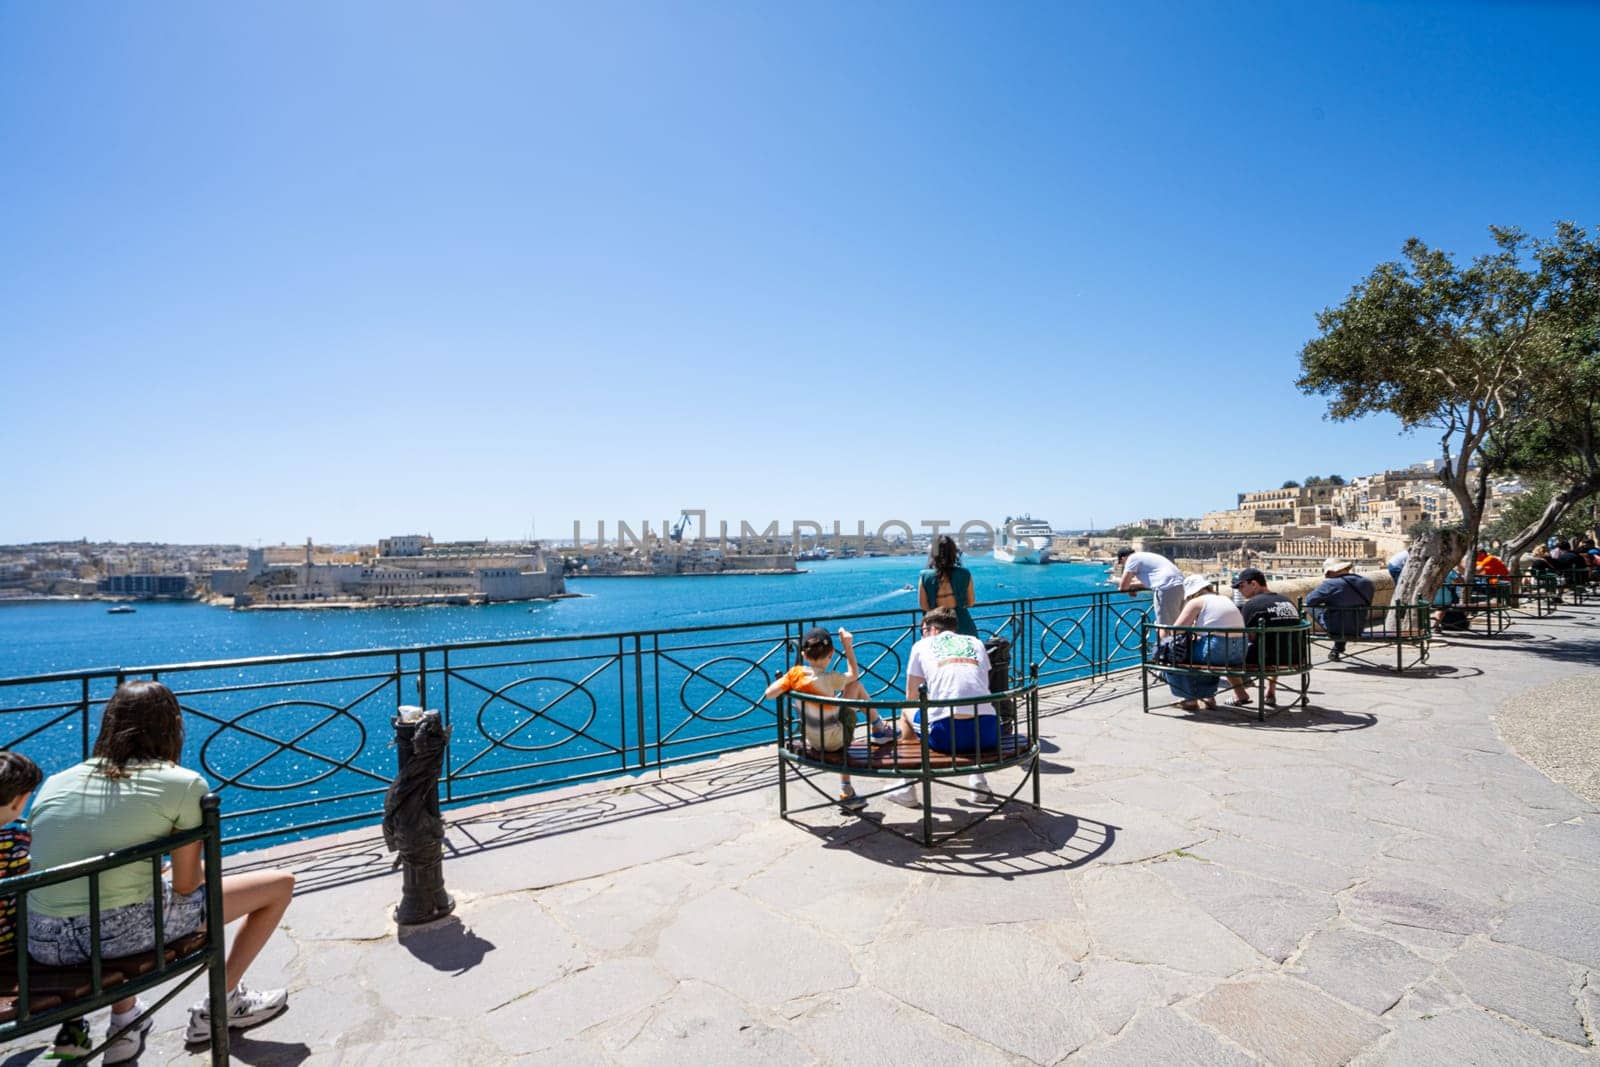 Barrakka lower Gardens in Valletta, Malta
in by sergiodv